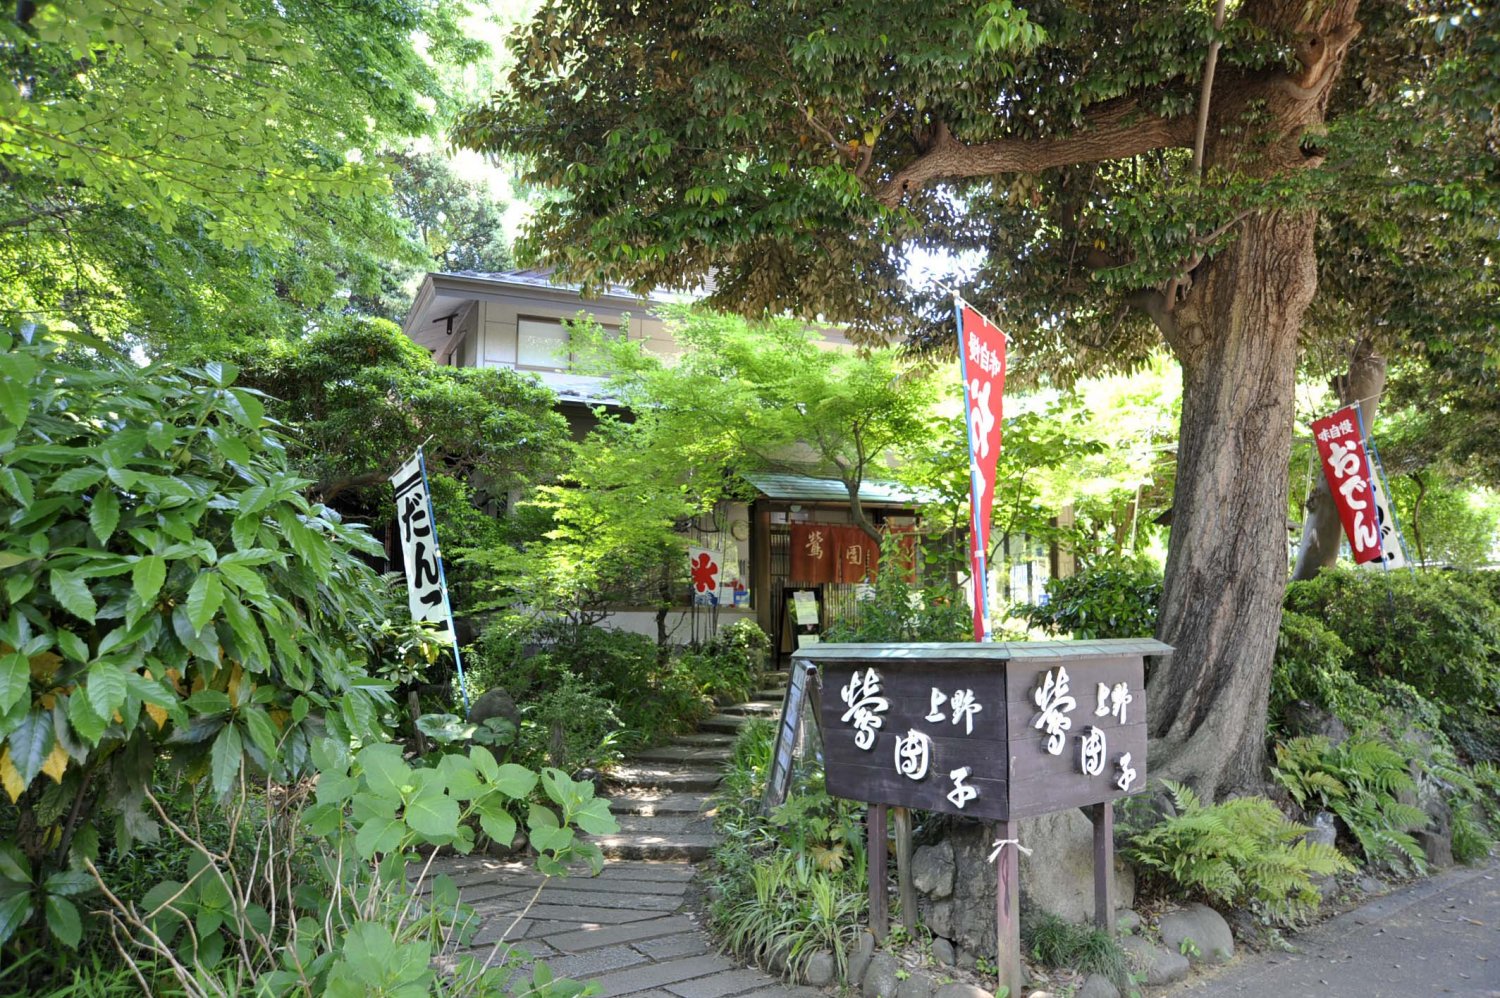 木立に包まれた店は、上野恩賜公園内でもひときわしっとりとした風情を漂わせている。